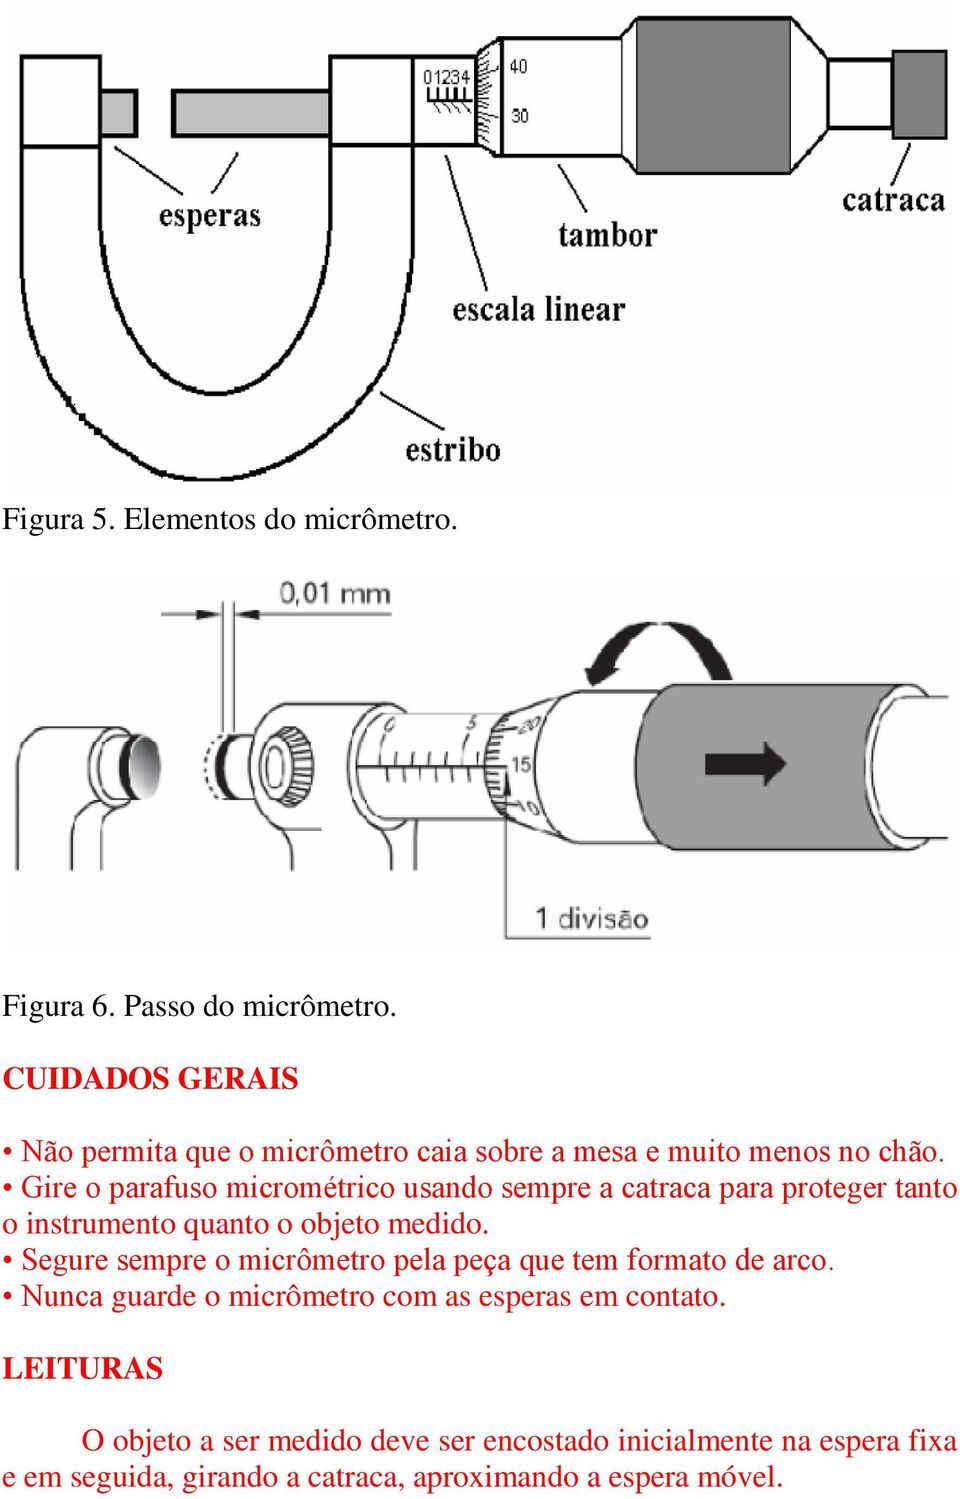 Gire o parafuso micrométrico usando sempre a catraca para proteger tanto o instrumento quanto o objeto medido.